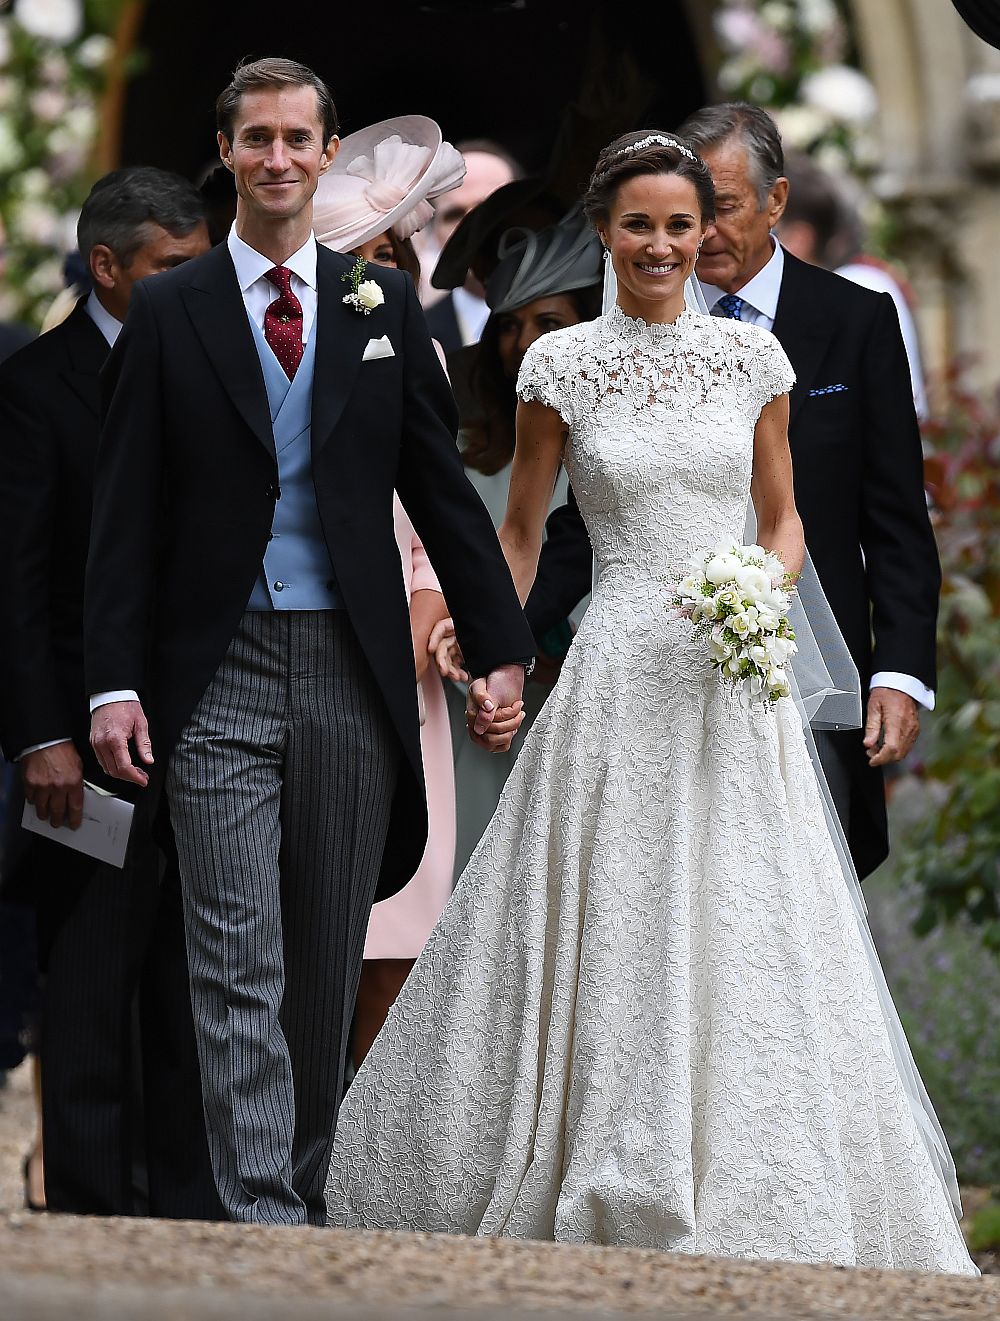 През май тази година сестрата на херцогинята на Кеймбридж Катрин - Пипа Мидълтън, се омъжи за милионера Джеймс Матюс